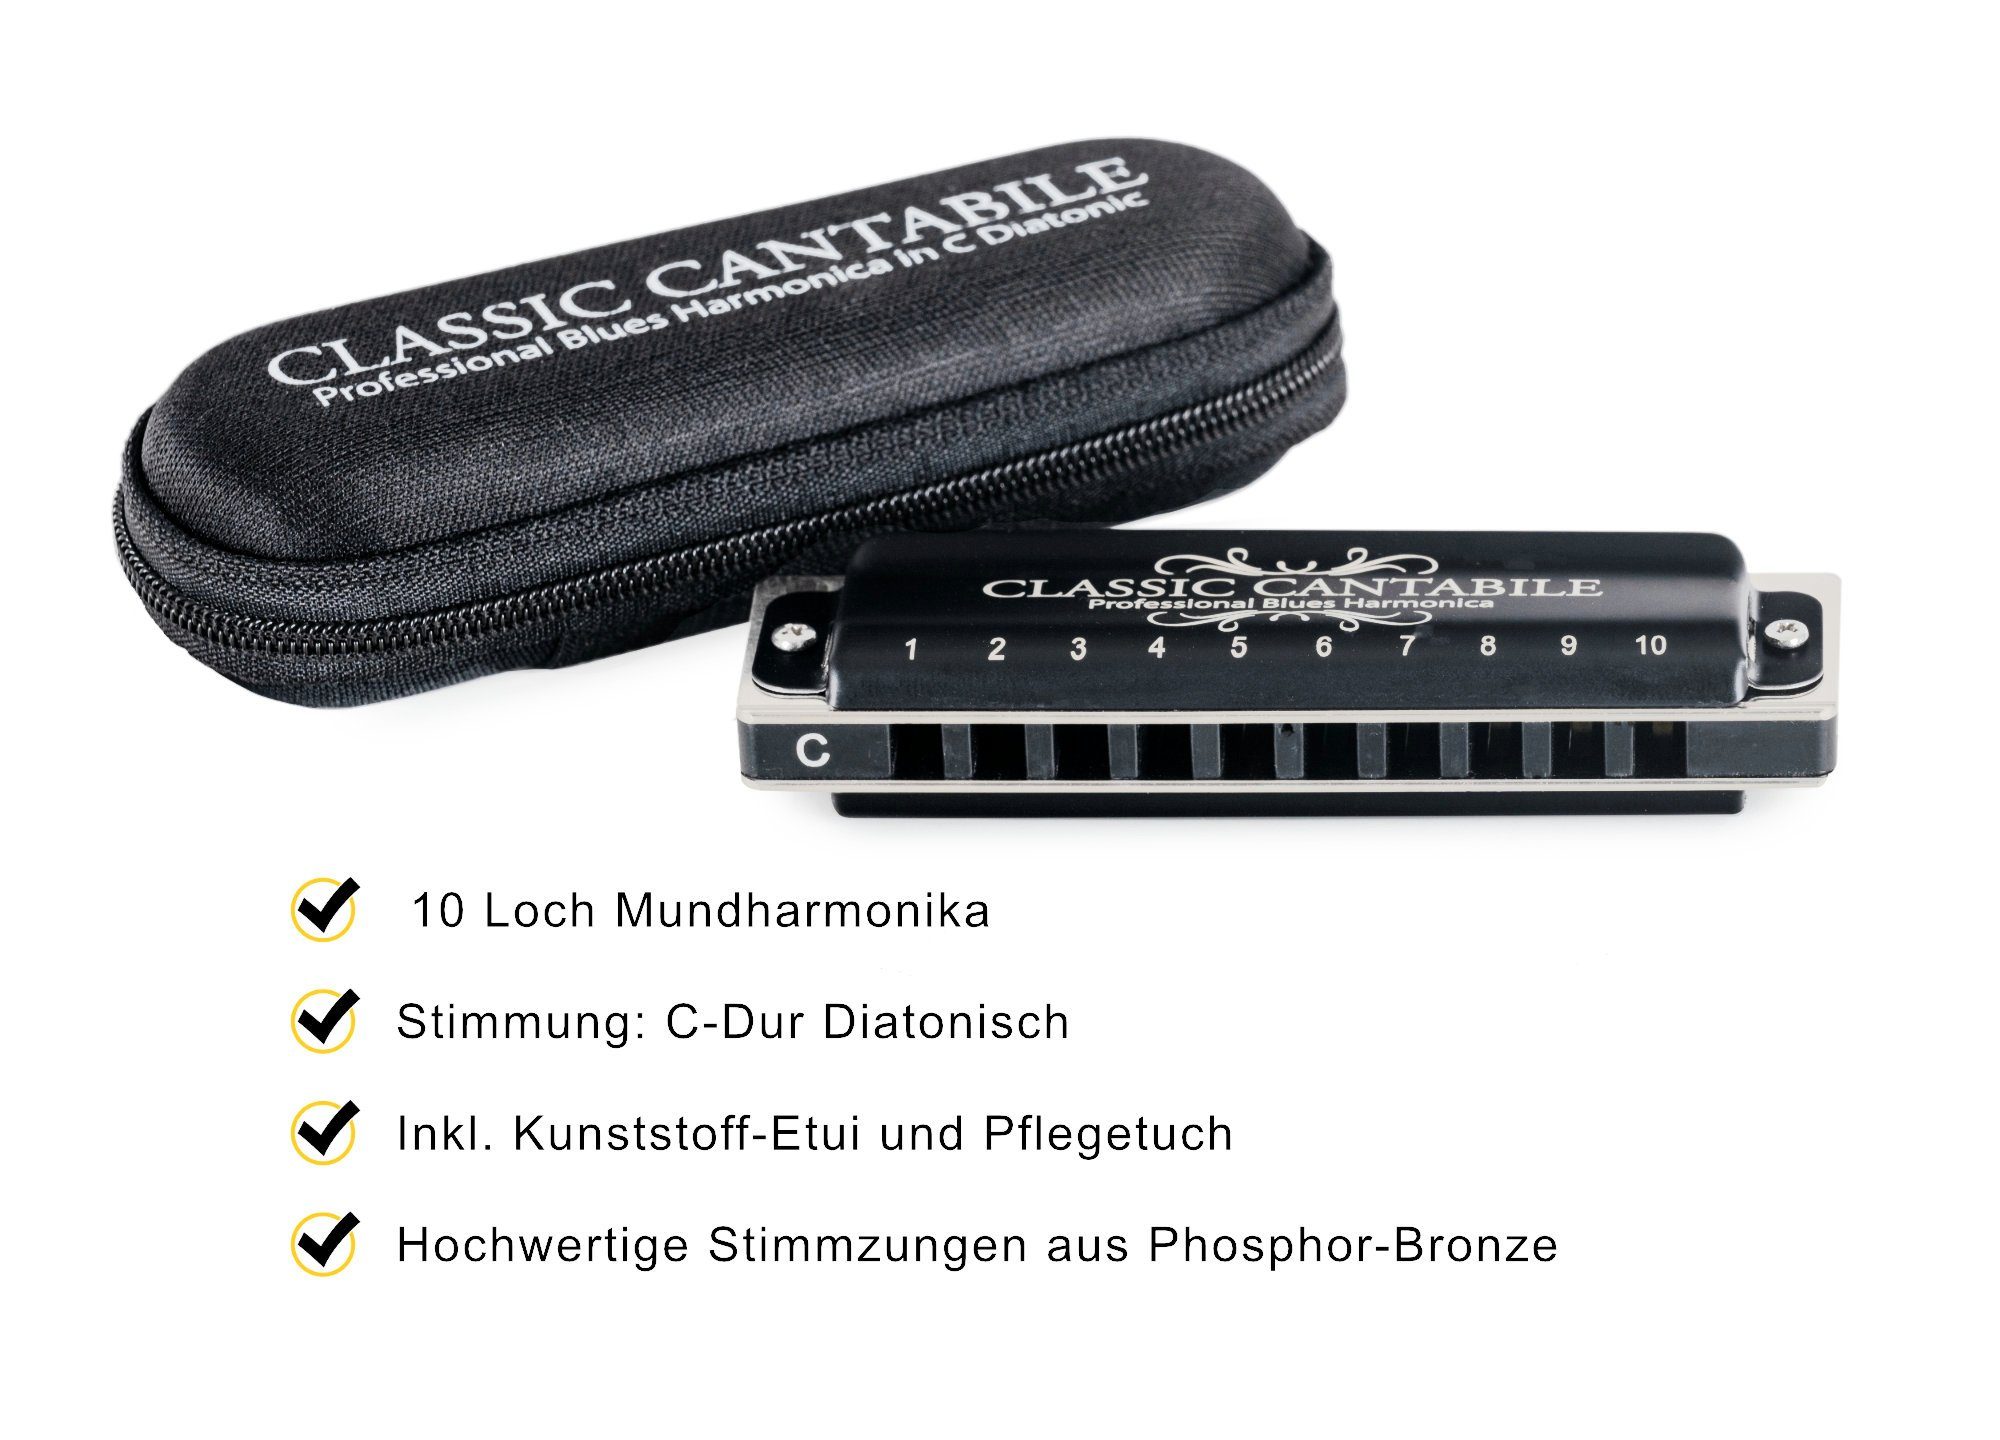 Diatonische 10-Loch Professional Blues Mundharmonika C-Dur mit Etui & Pflegetuch 